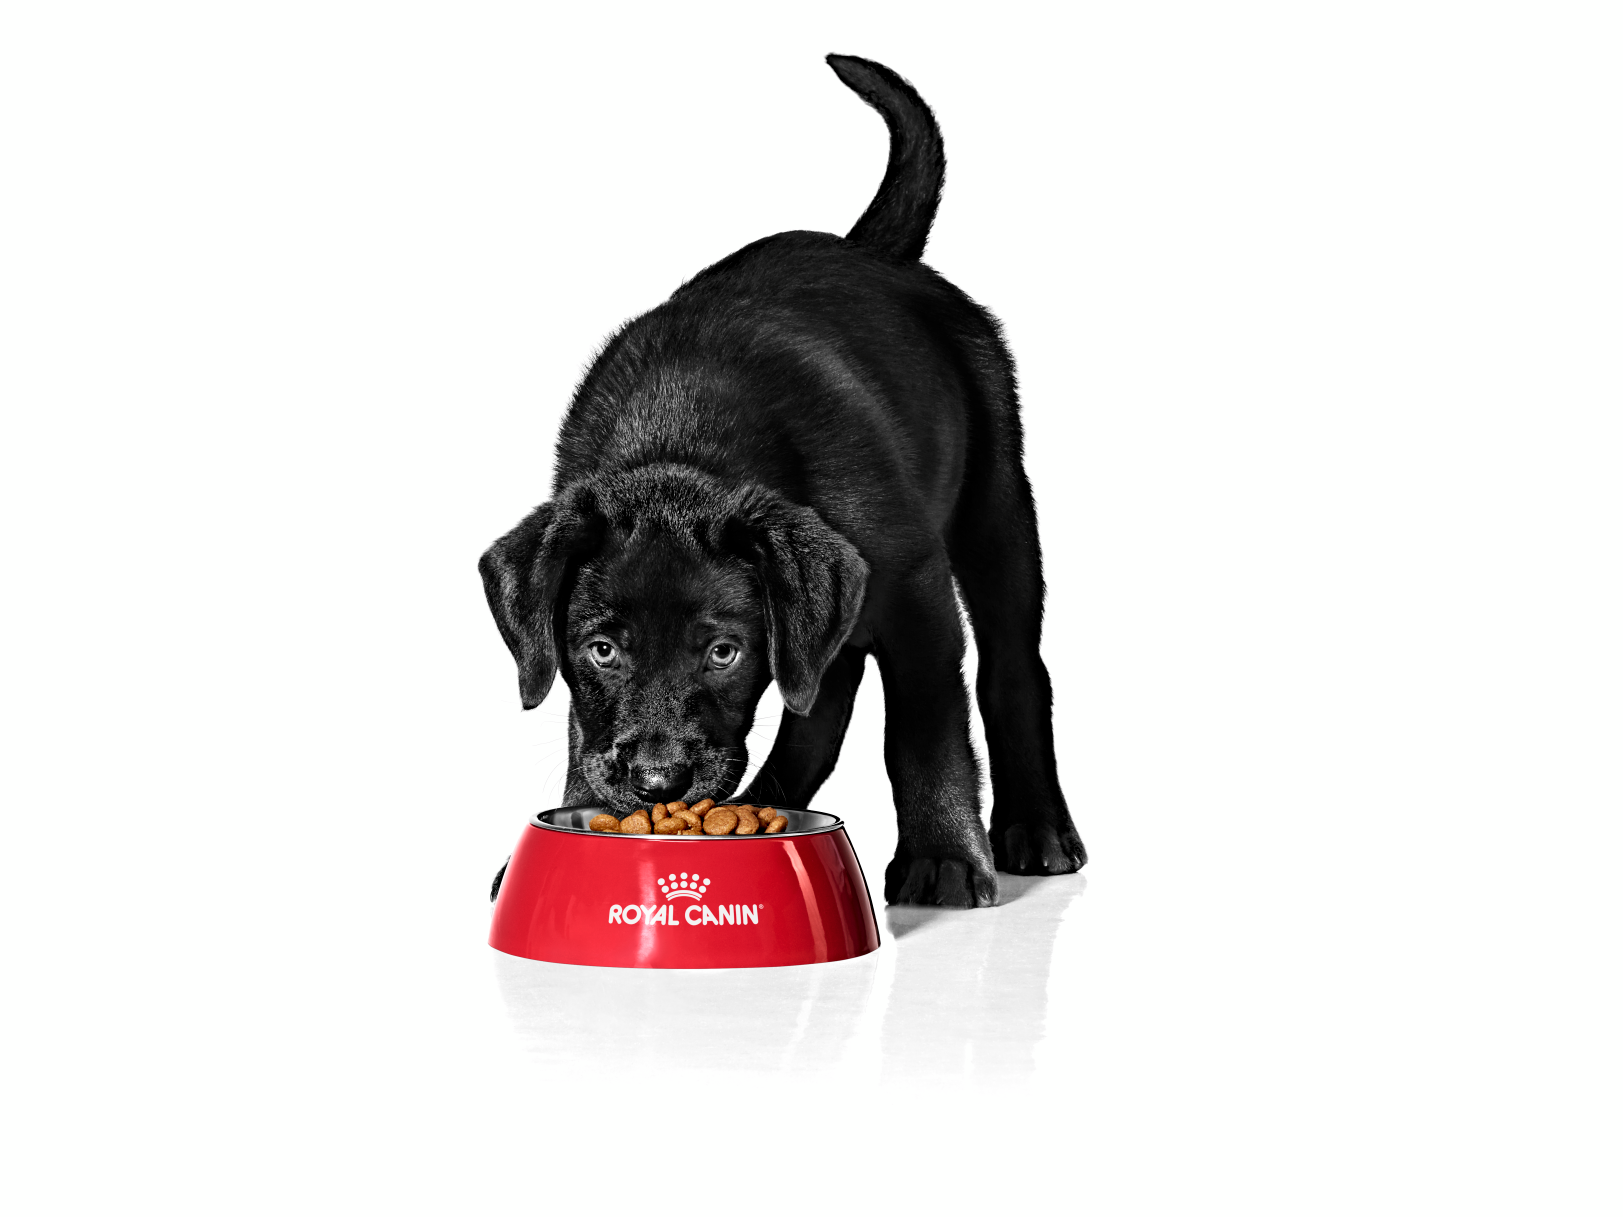 labrador Retriever puppy eating from a bowl